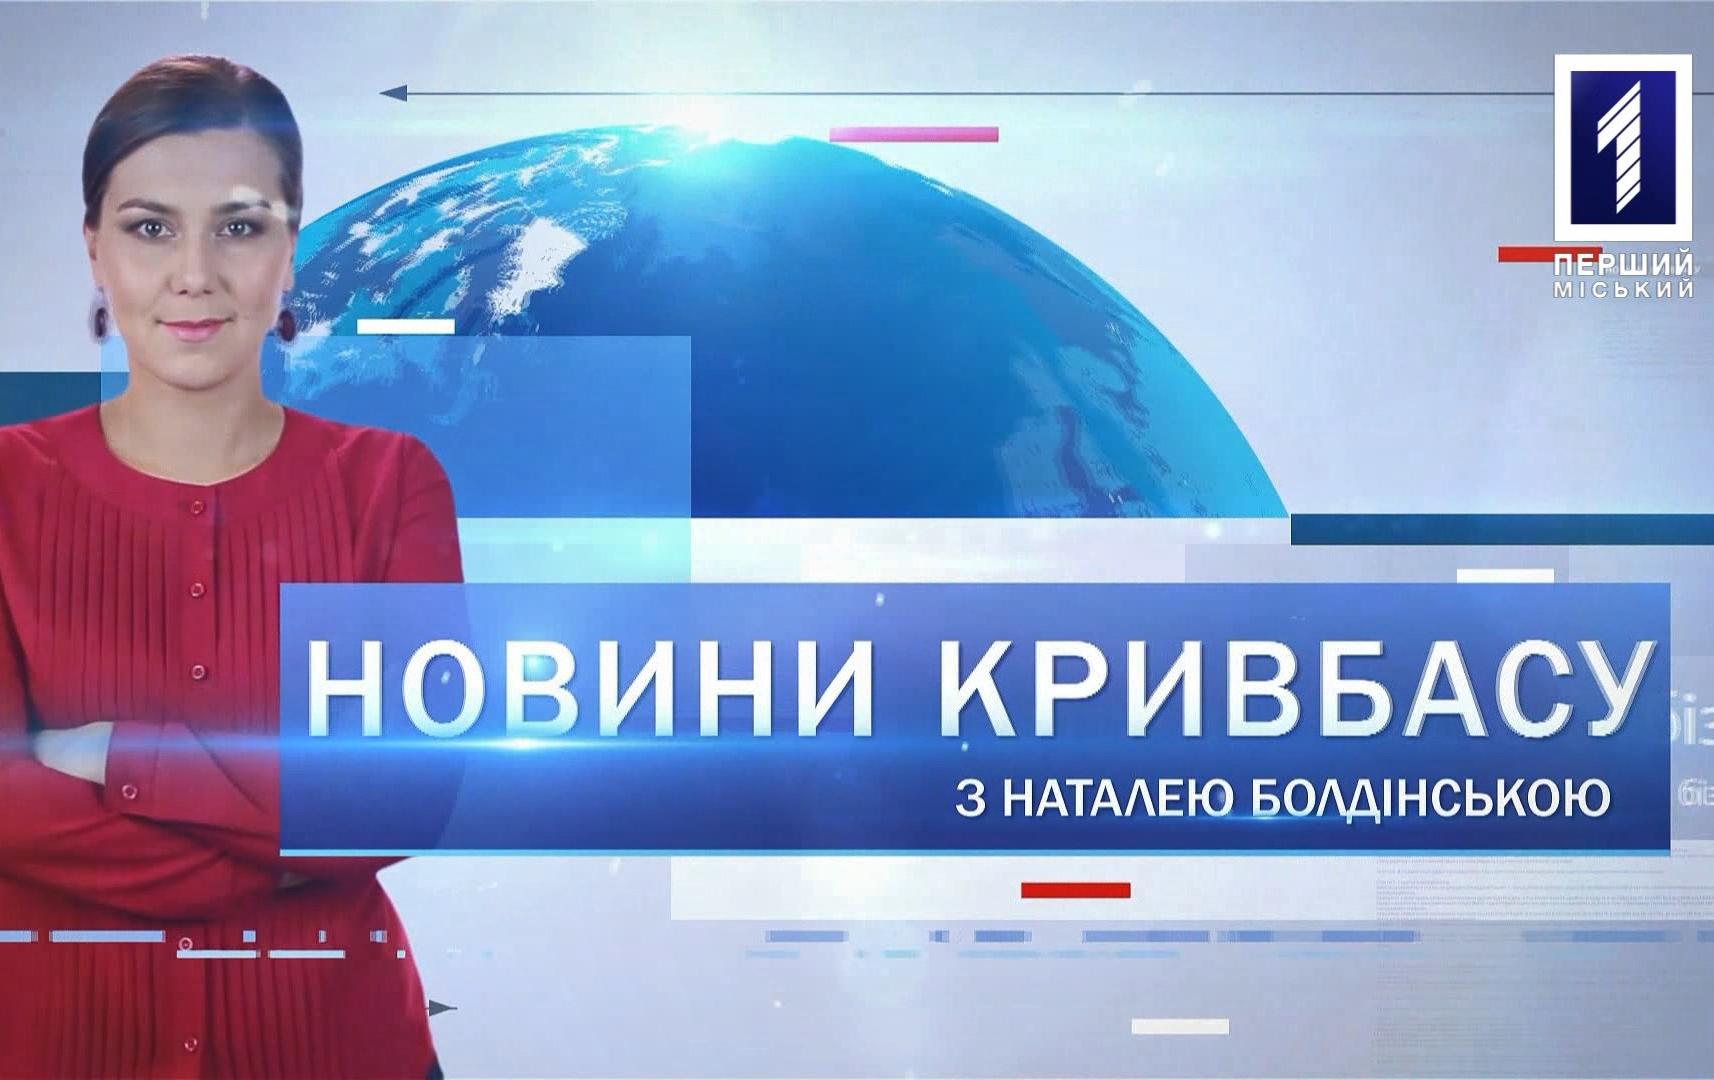 Новини Кривбасу 22 травня 2020: напад на прокурора, COVID-19, відміна спецперепусток